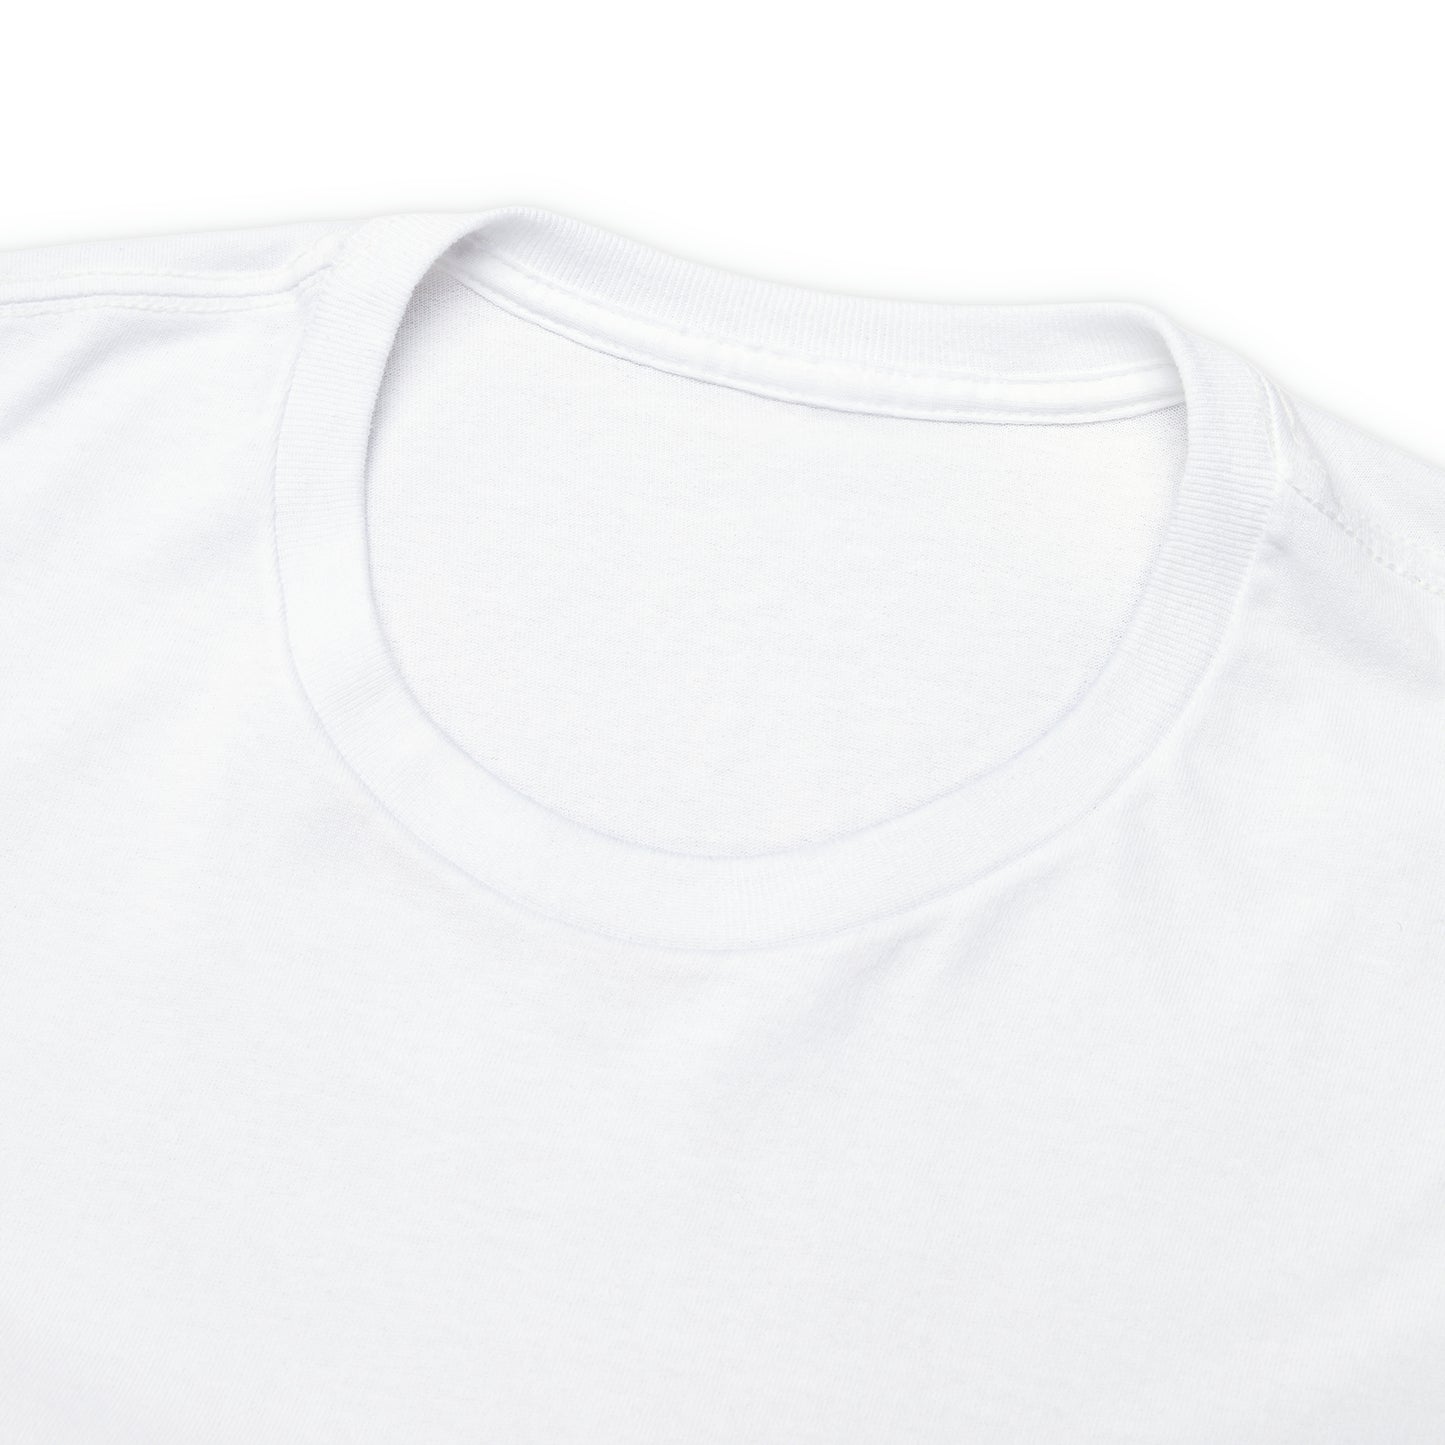 KFUM Oslo Unisex Heavy Cotton T-shirt